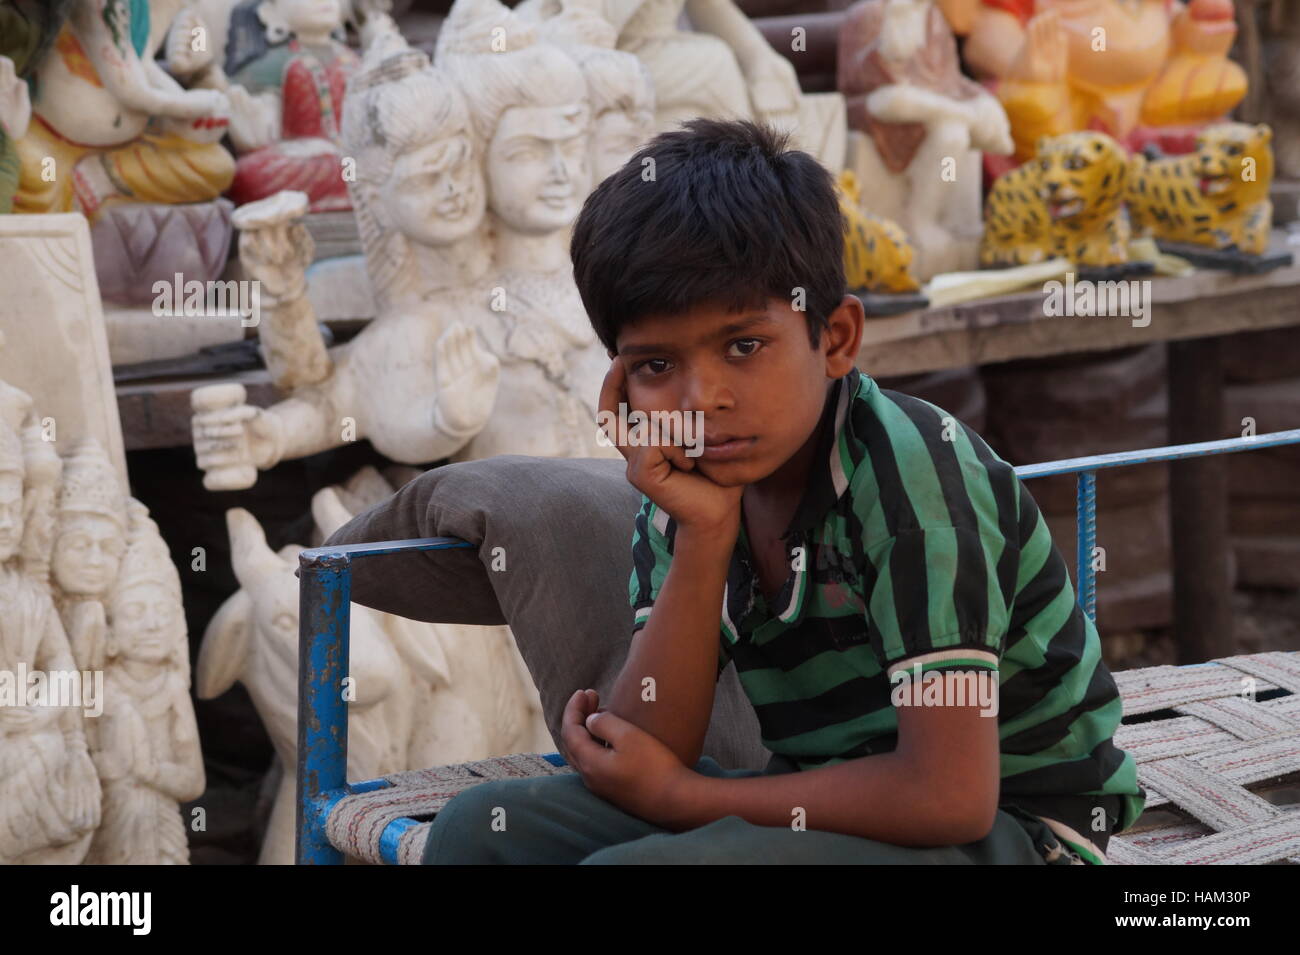 Gott ist hinter mir - das ist eine Straße Foto des indischen am Straßenrand Verkäufer. Verkauf des Hindu-Gottes Götzen & wartet auf Kunden Stockfoto